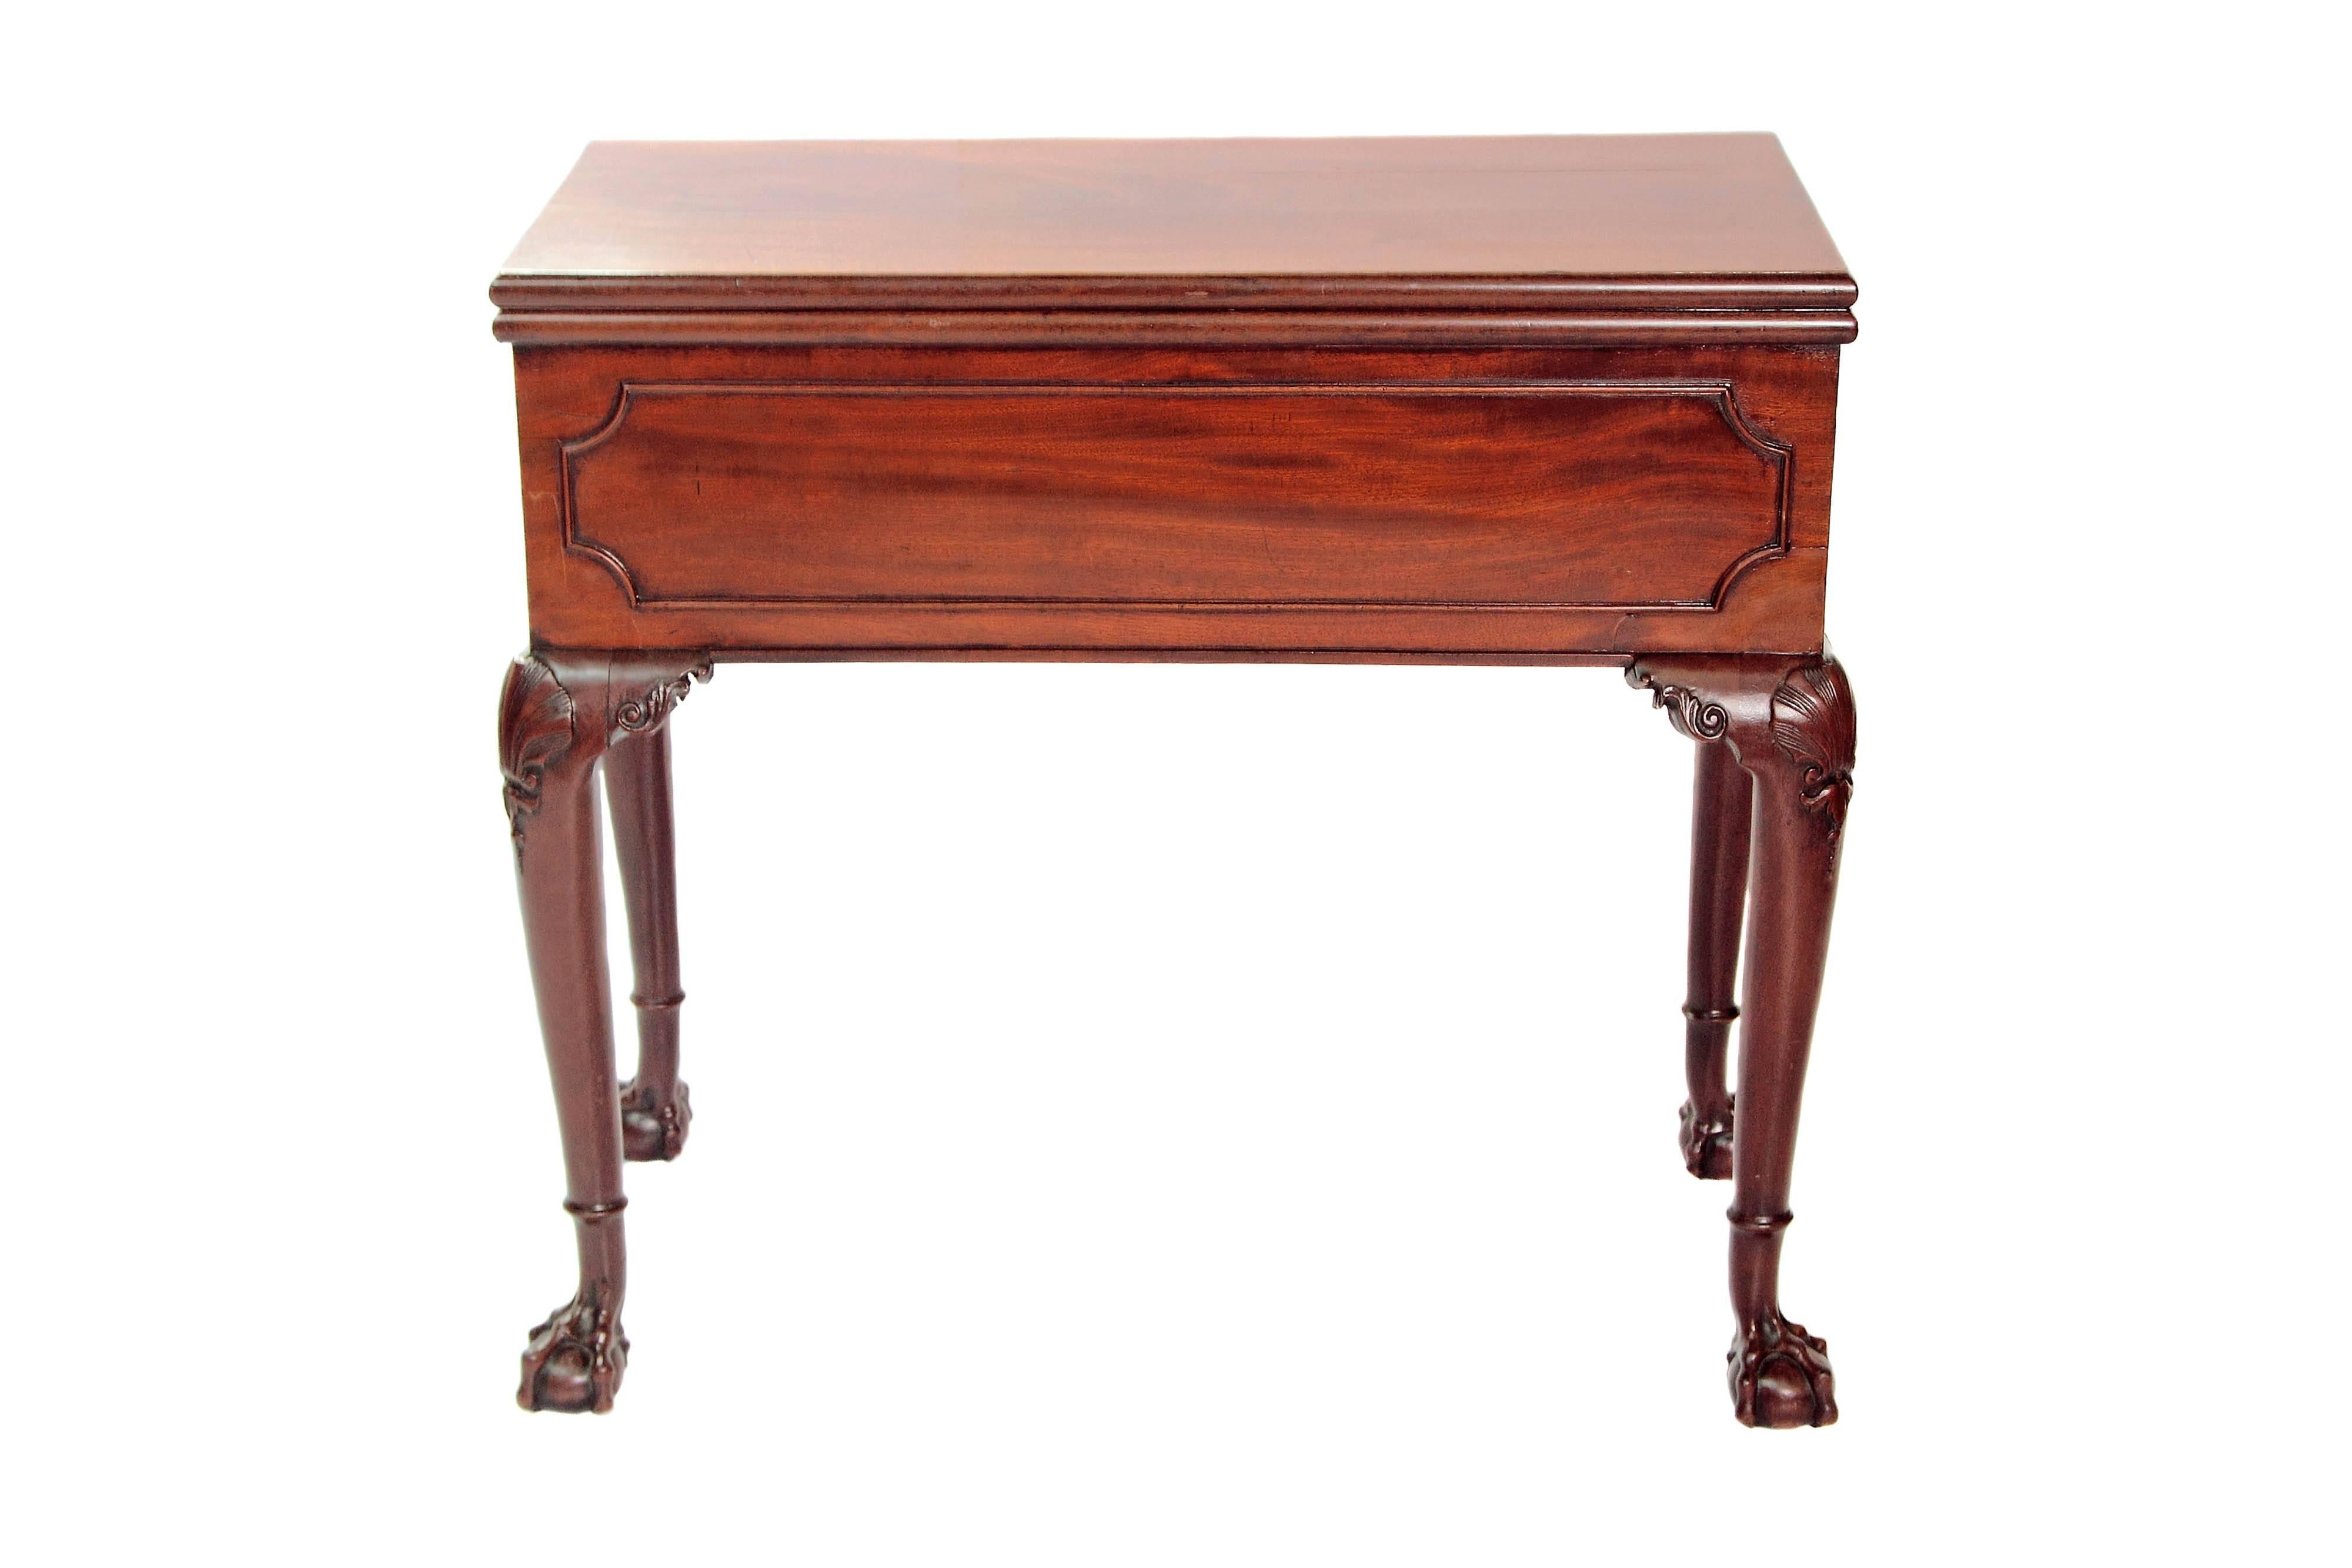 Table-bureau en acajou de George II pour les jeux et le thé. Le plateau en acajou est soutenu par un pied arrière articulé lorsqu'il est ouvert. Le dessus, lorsqu'il est ouvert, dissimule la table de jeu et un meuble pop-up arlequin qui contient des